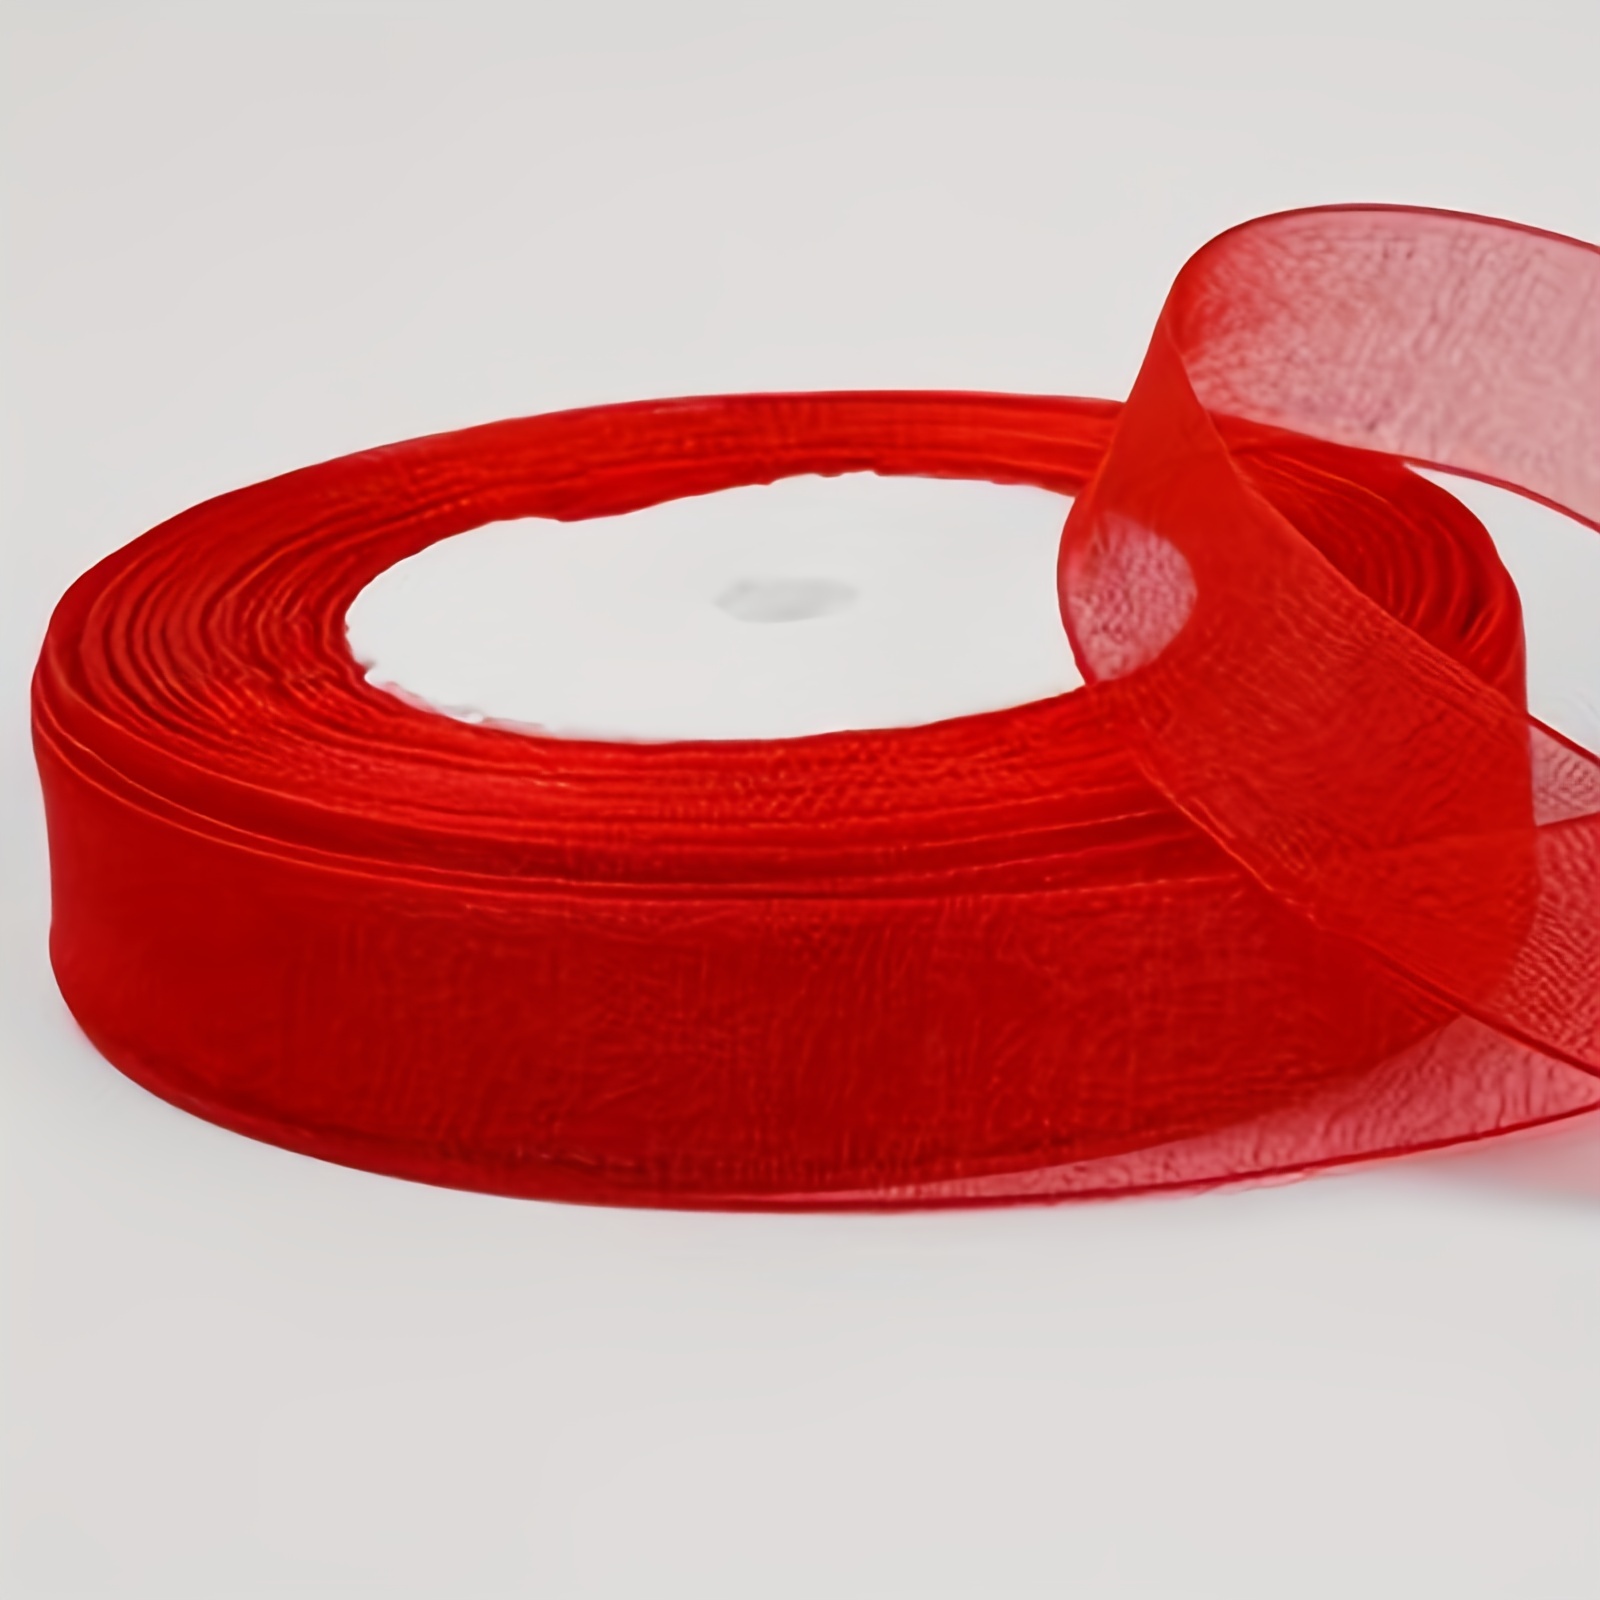 Jam Paper Sheer Ribbon - Pack of 2